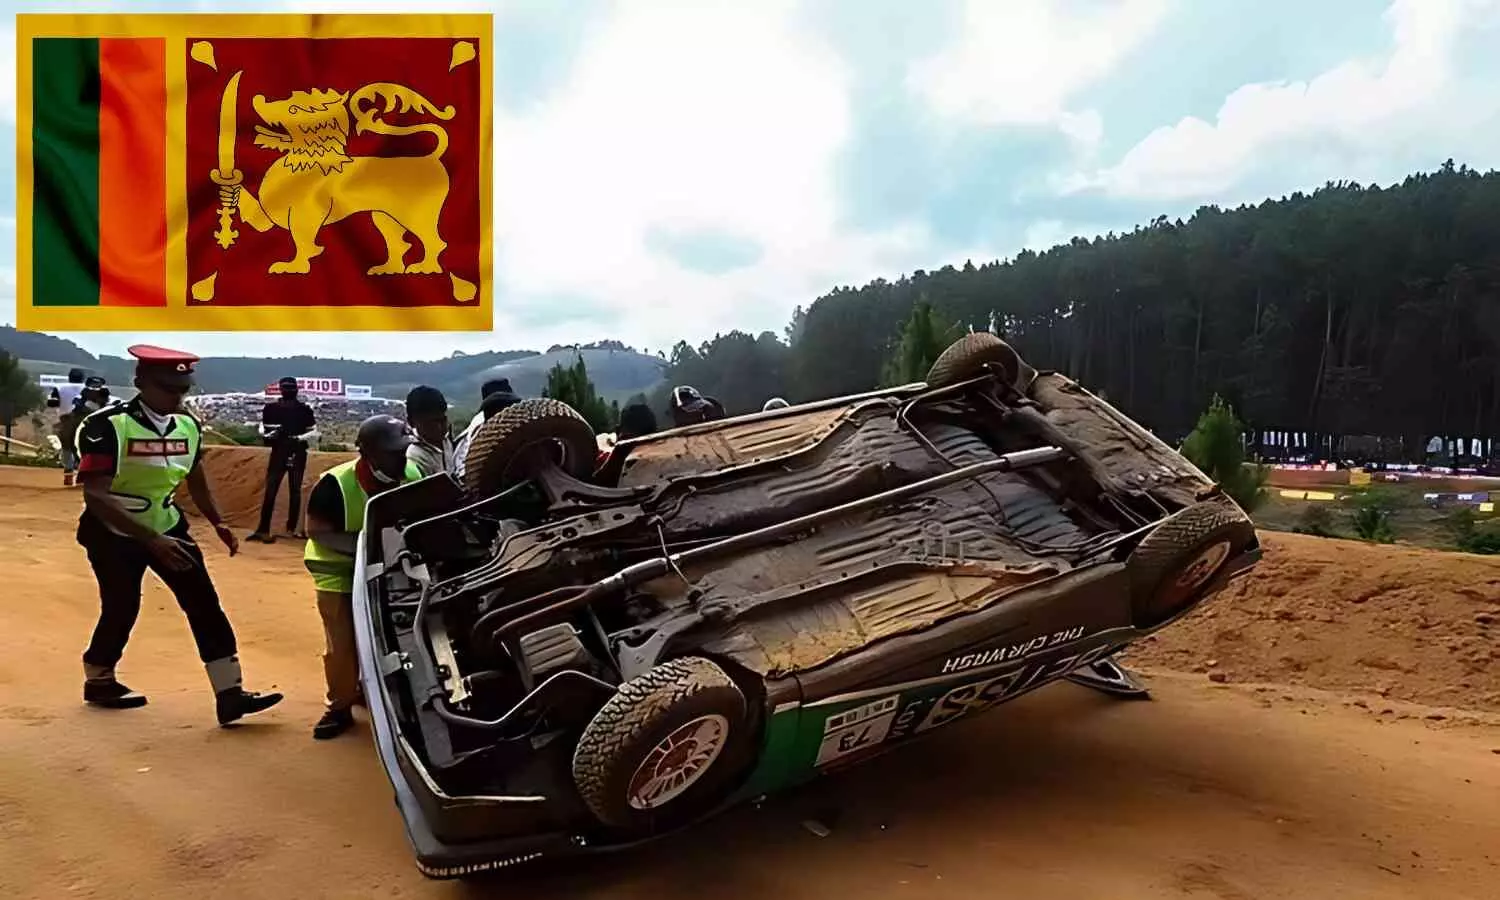 श्रीलंका: मोटरस्पोर्ट्स कार रेसिंग में बड़ा हादसा, दर्शकों पर कार चढ़ जाने से सात की मौत, 20 से अधिक घायल